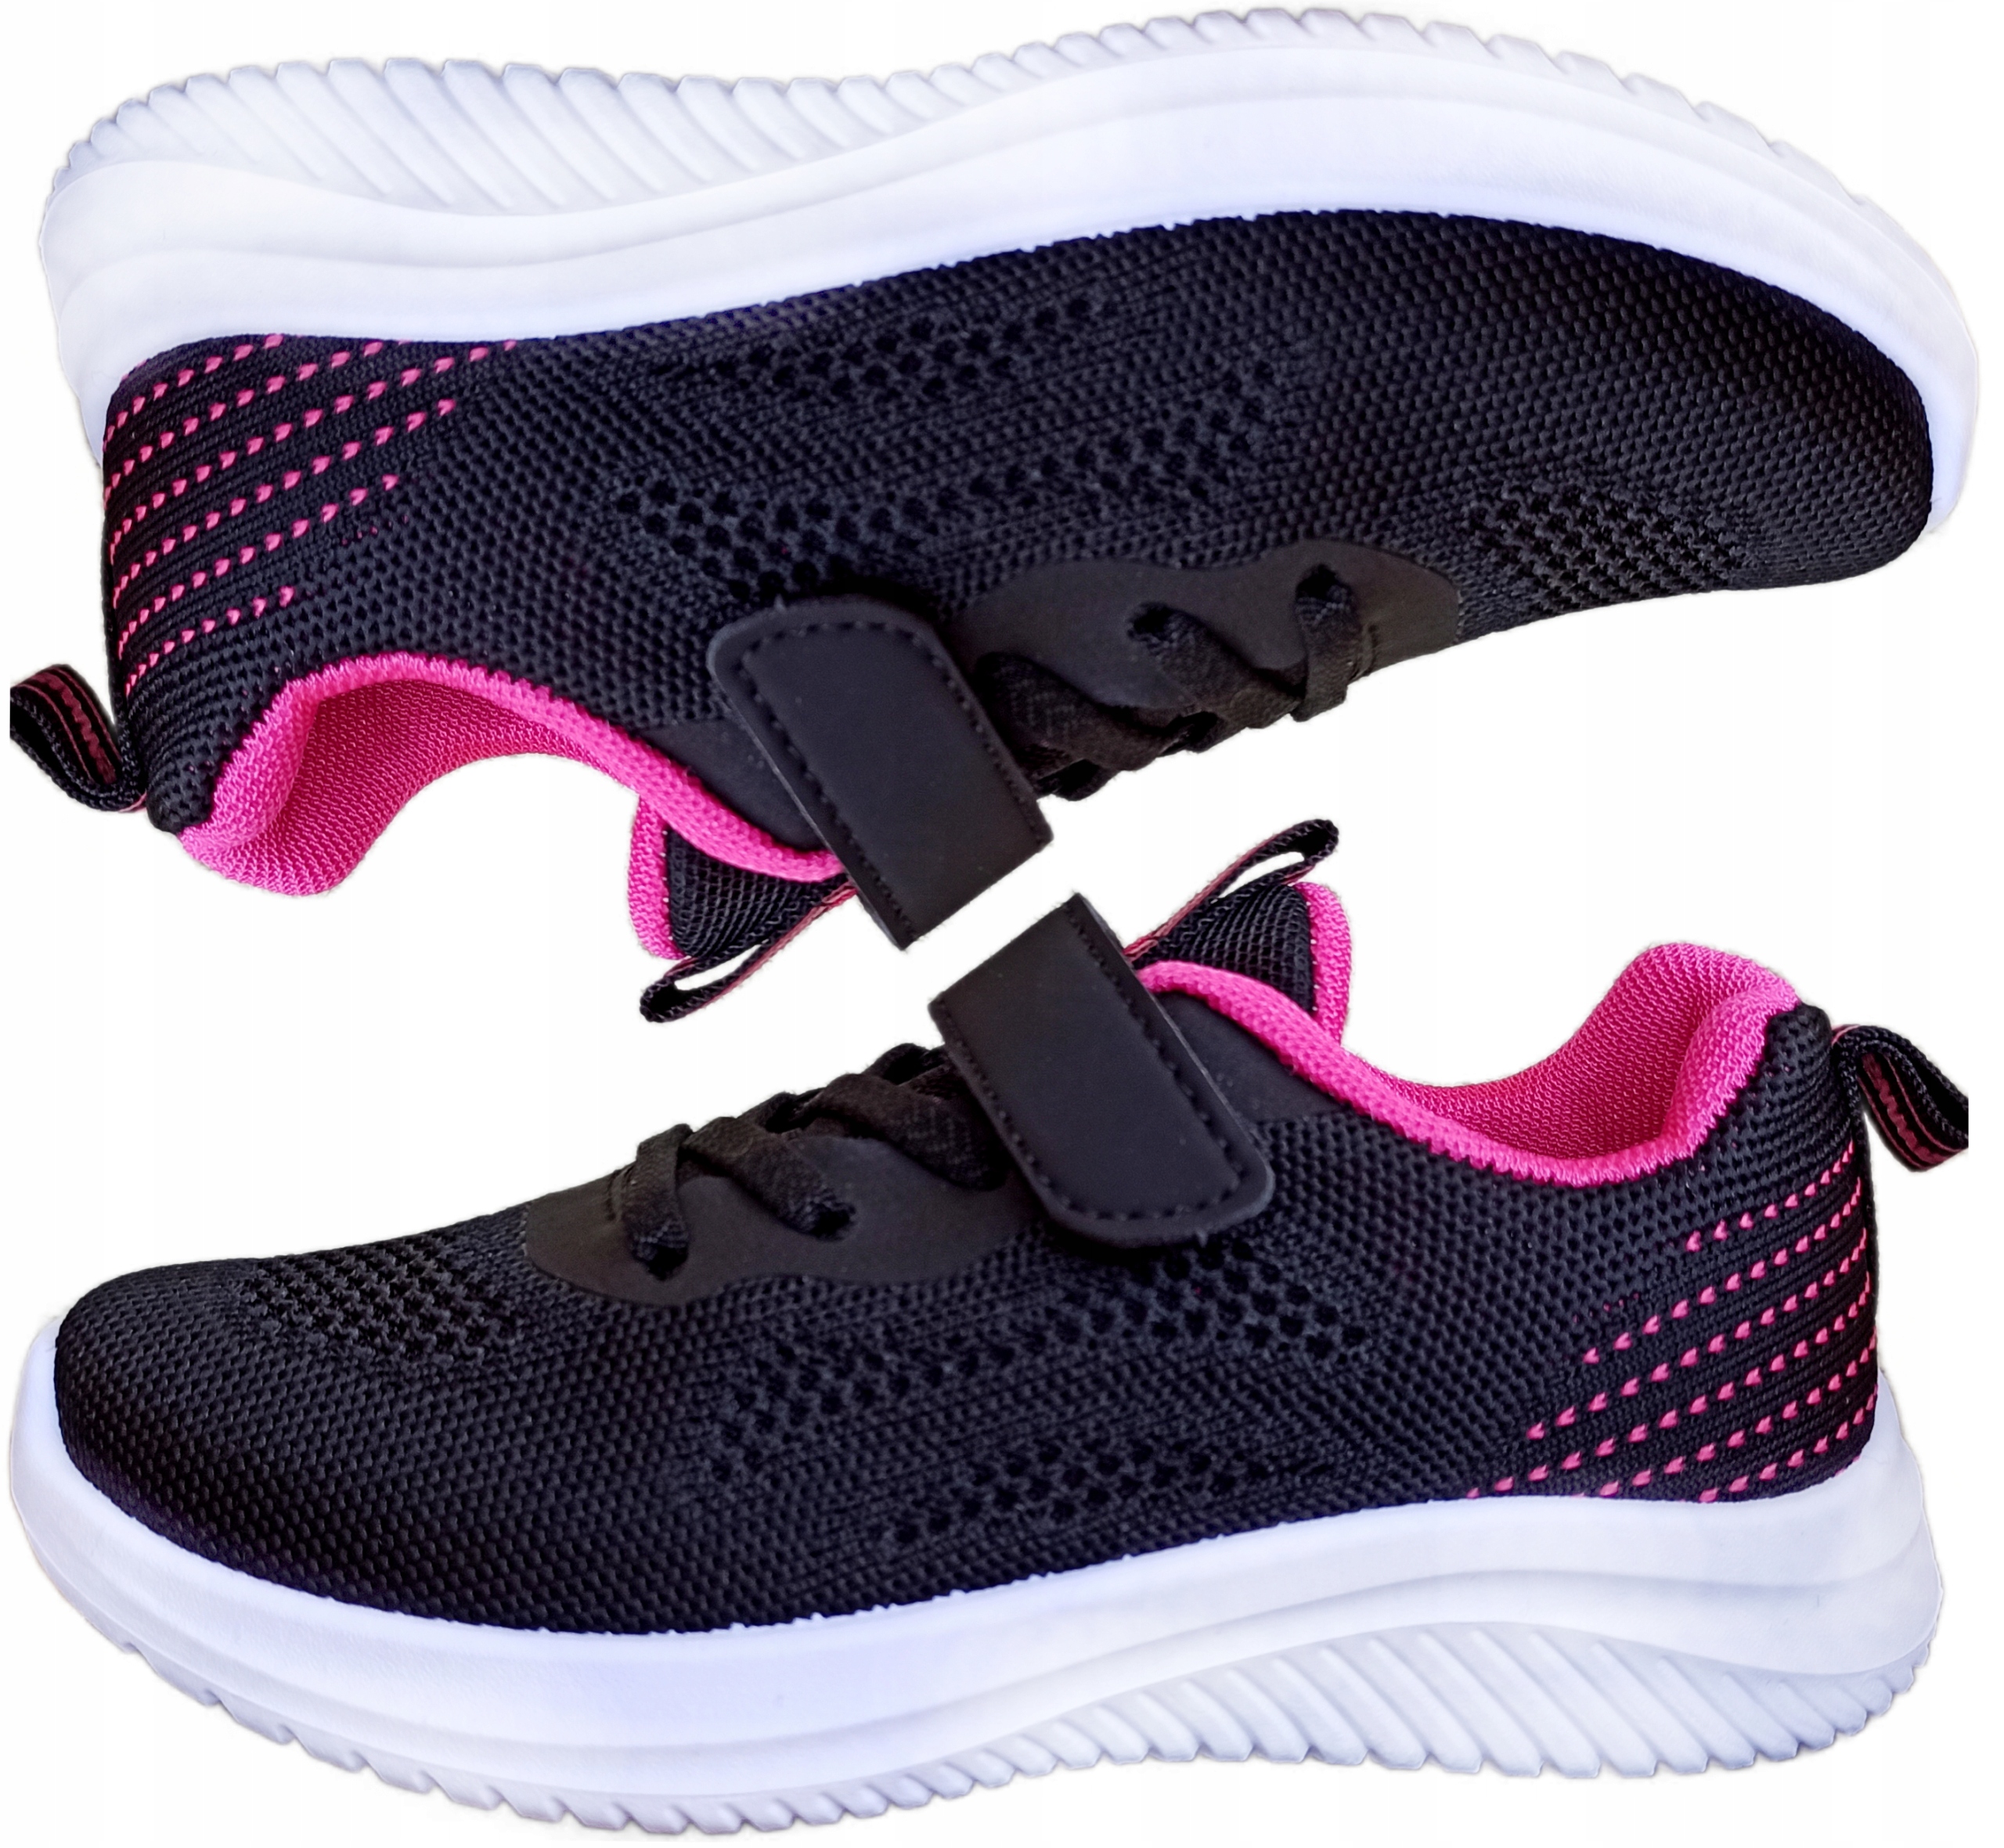 Odľahčená športová obuv, tenisky, detské tenisky r36 c ružové P1-157